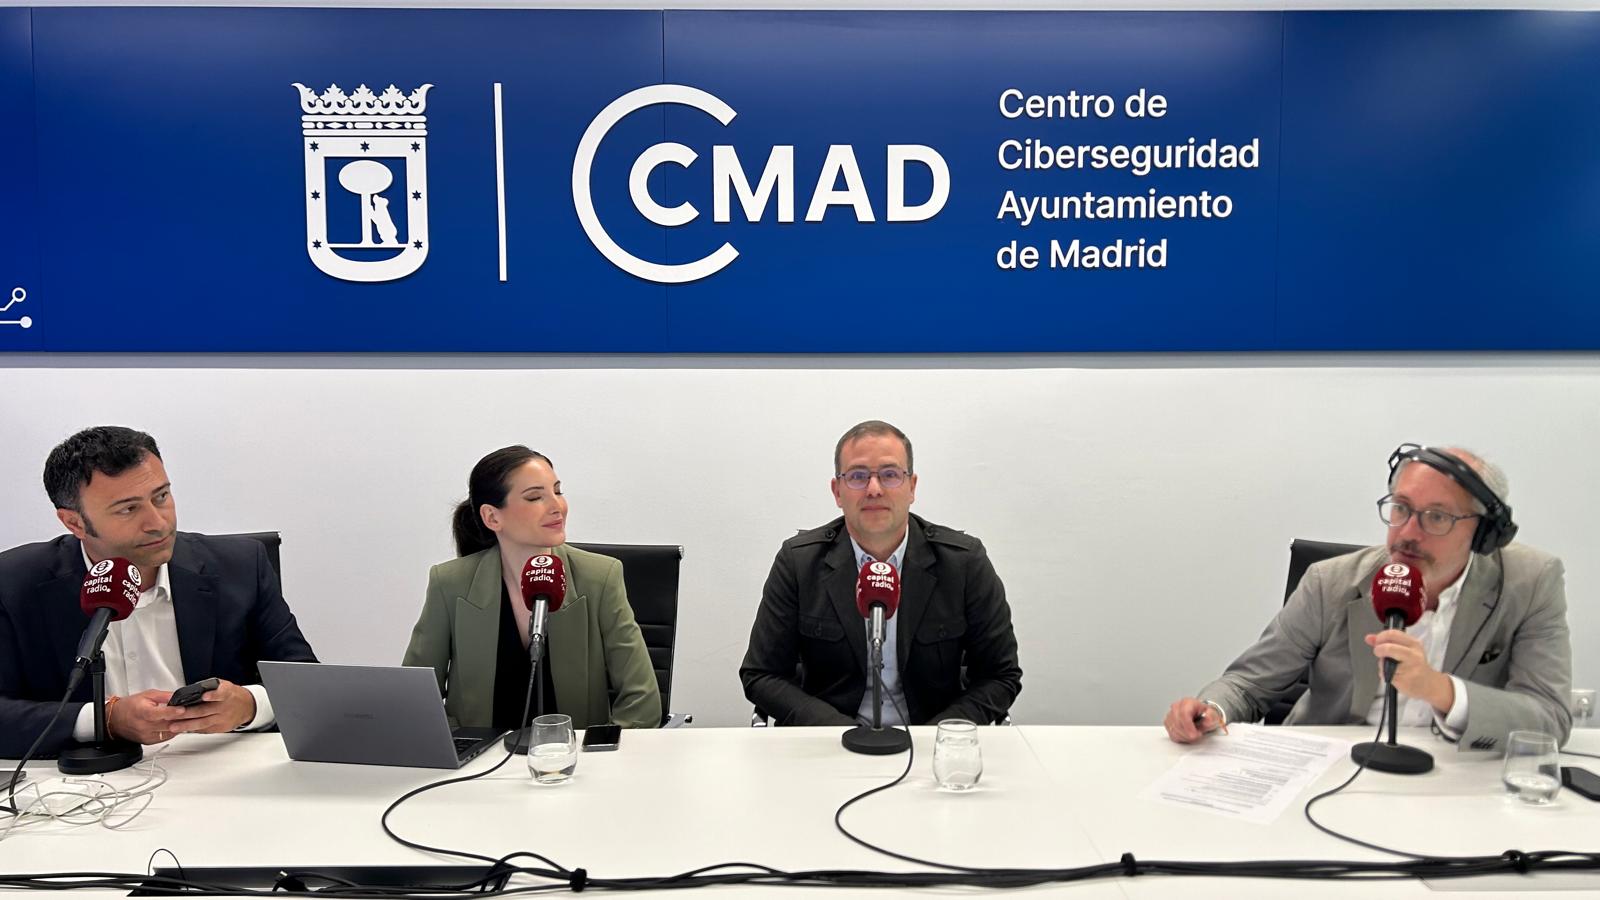 Segunda entrega del Especial Ciberafterwork con Francisco Hernández Cuchí, jefe del Departamento de Operaciones del CCMAD.